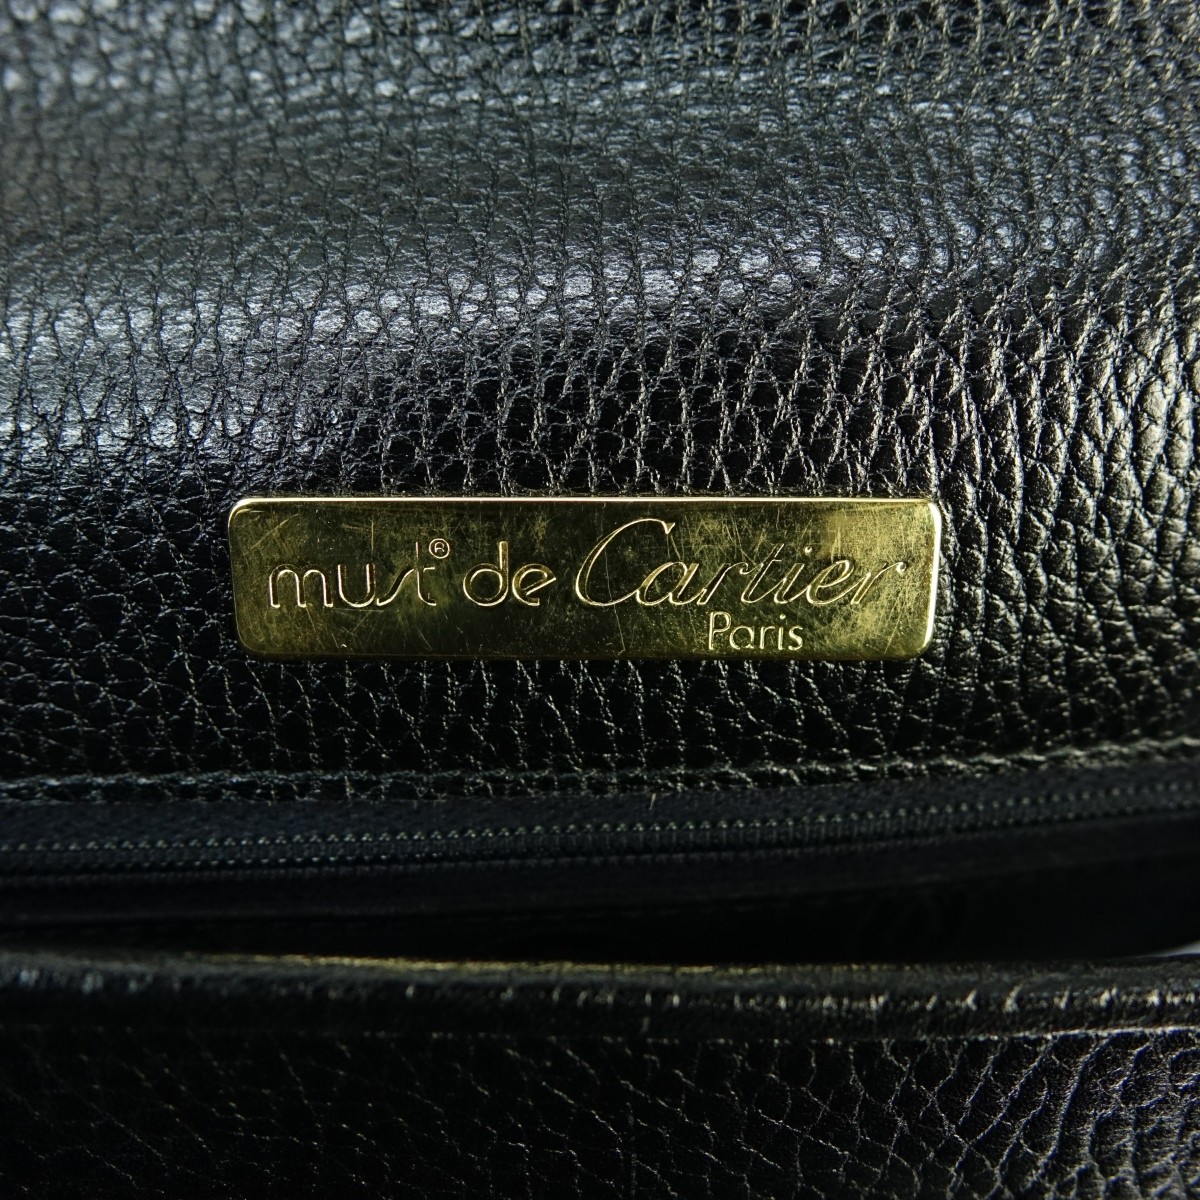 Cartier Black Leather Crossbody Shoulder Bag